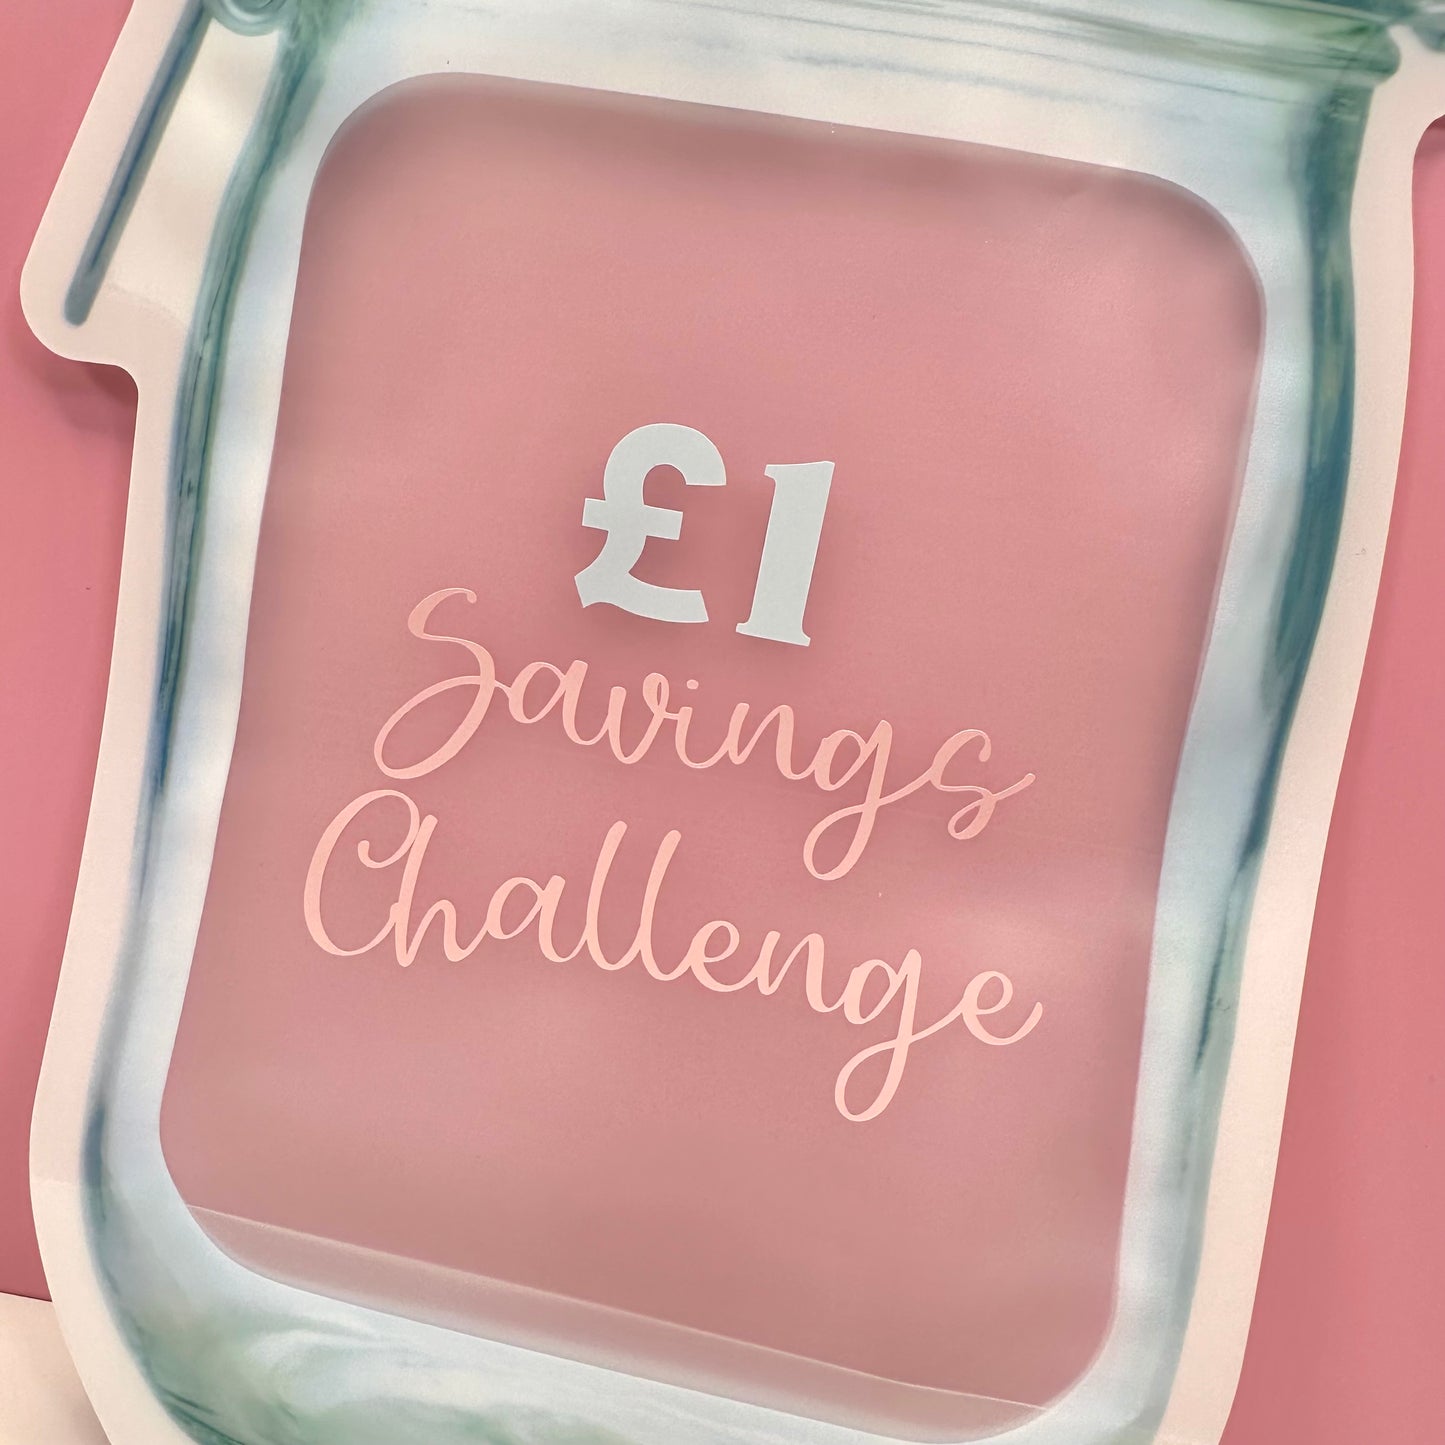 £1 Challenge Bundle with Zip Lock Money Bag!